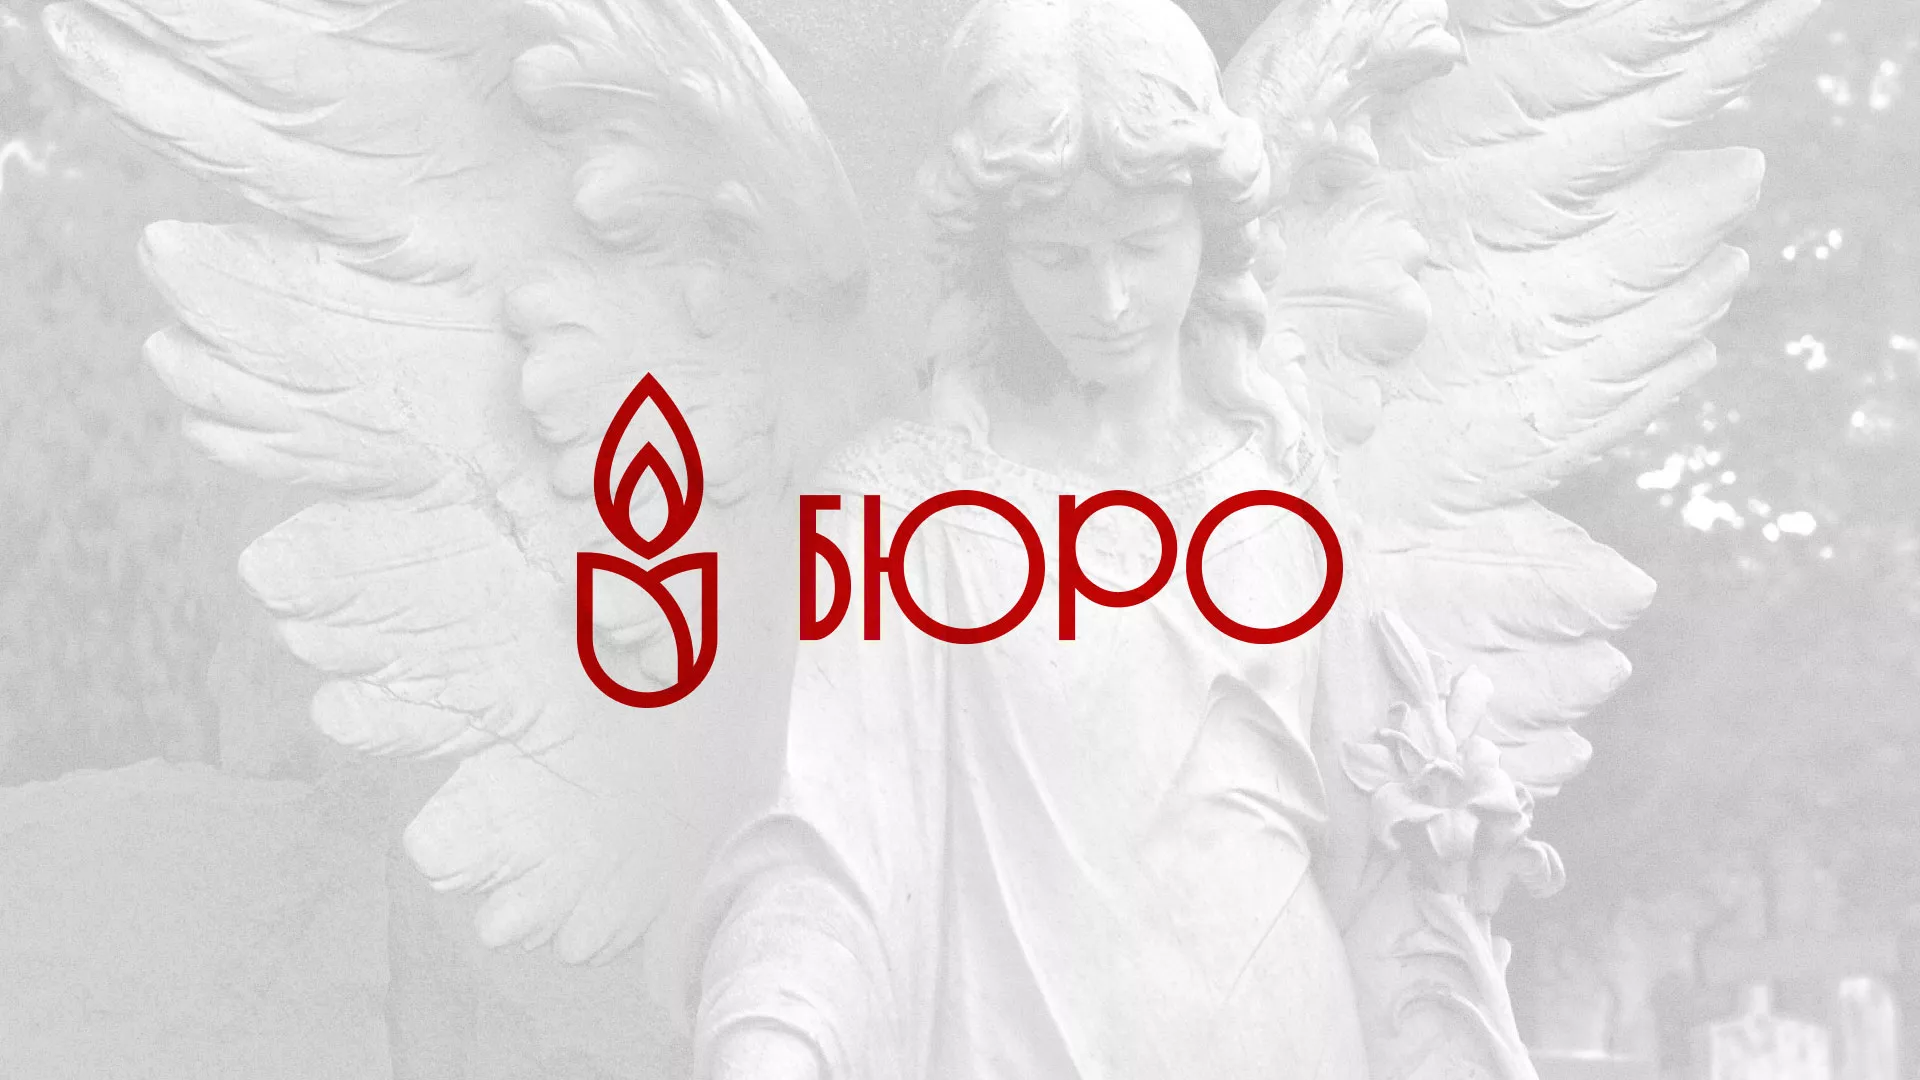 Создание логотипа бюро ритуальных услуг в Андреаполе